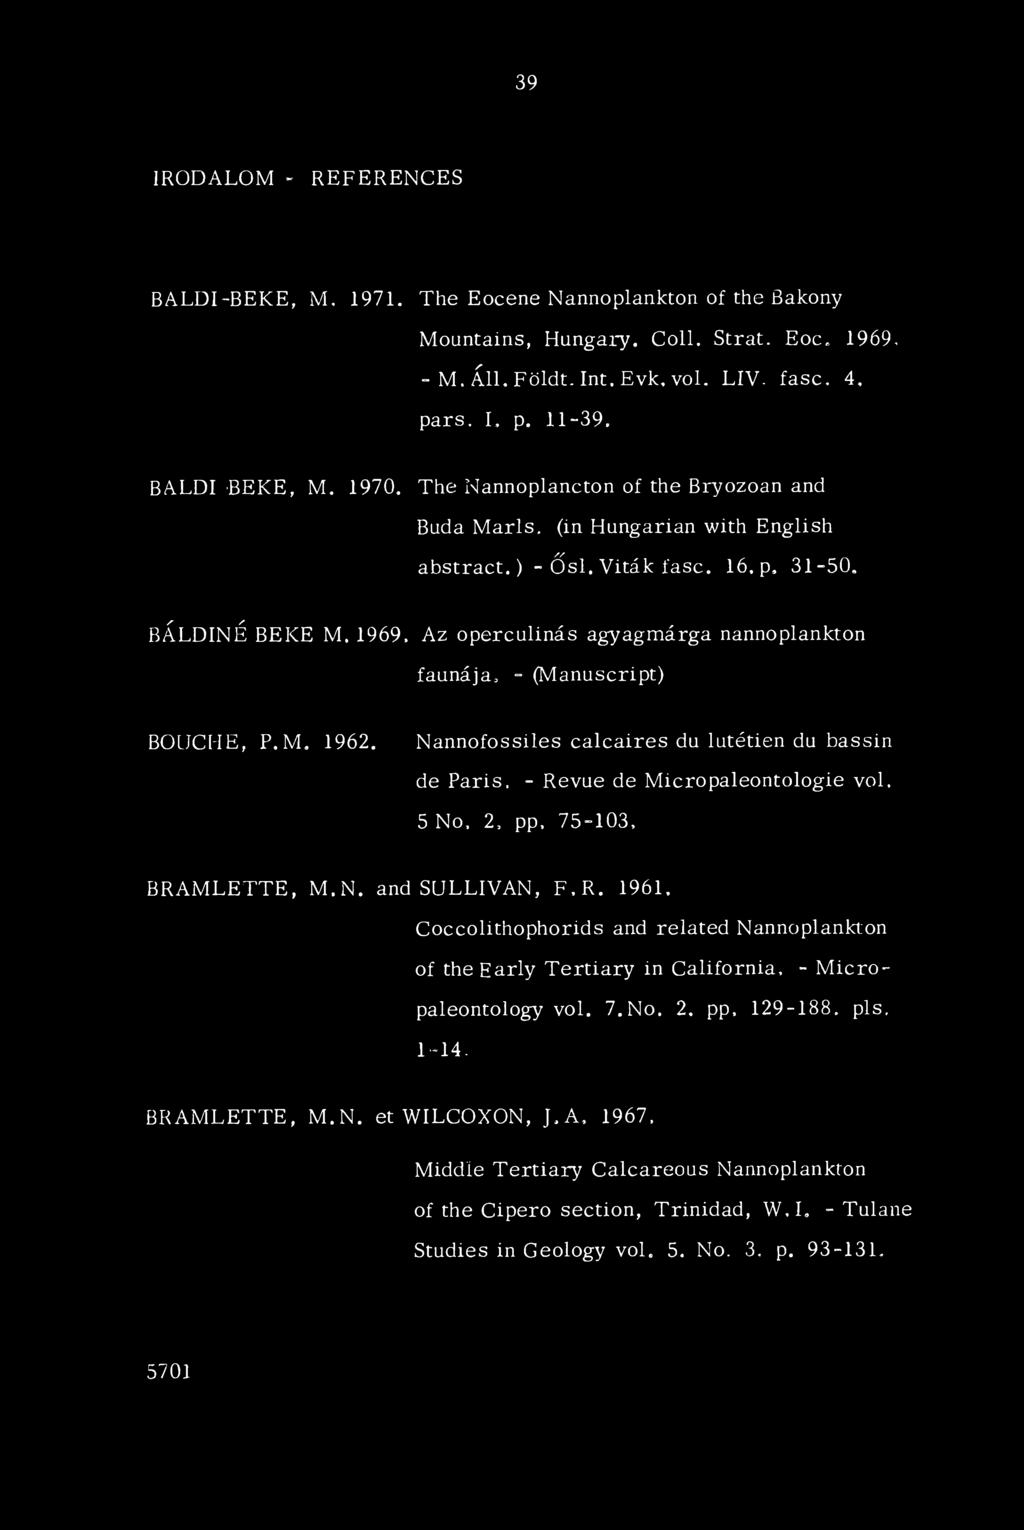 1969, Az operculinás agyagmárga nannoplankton faunája, - (Manuscript) BOIJCHE, P.M, 1962.